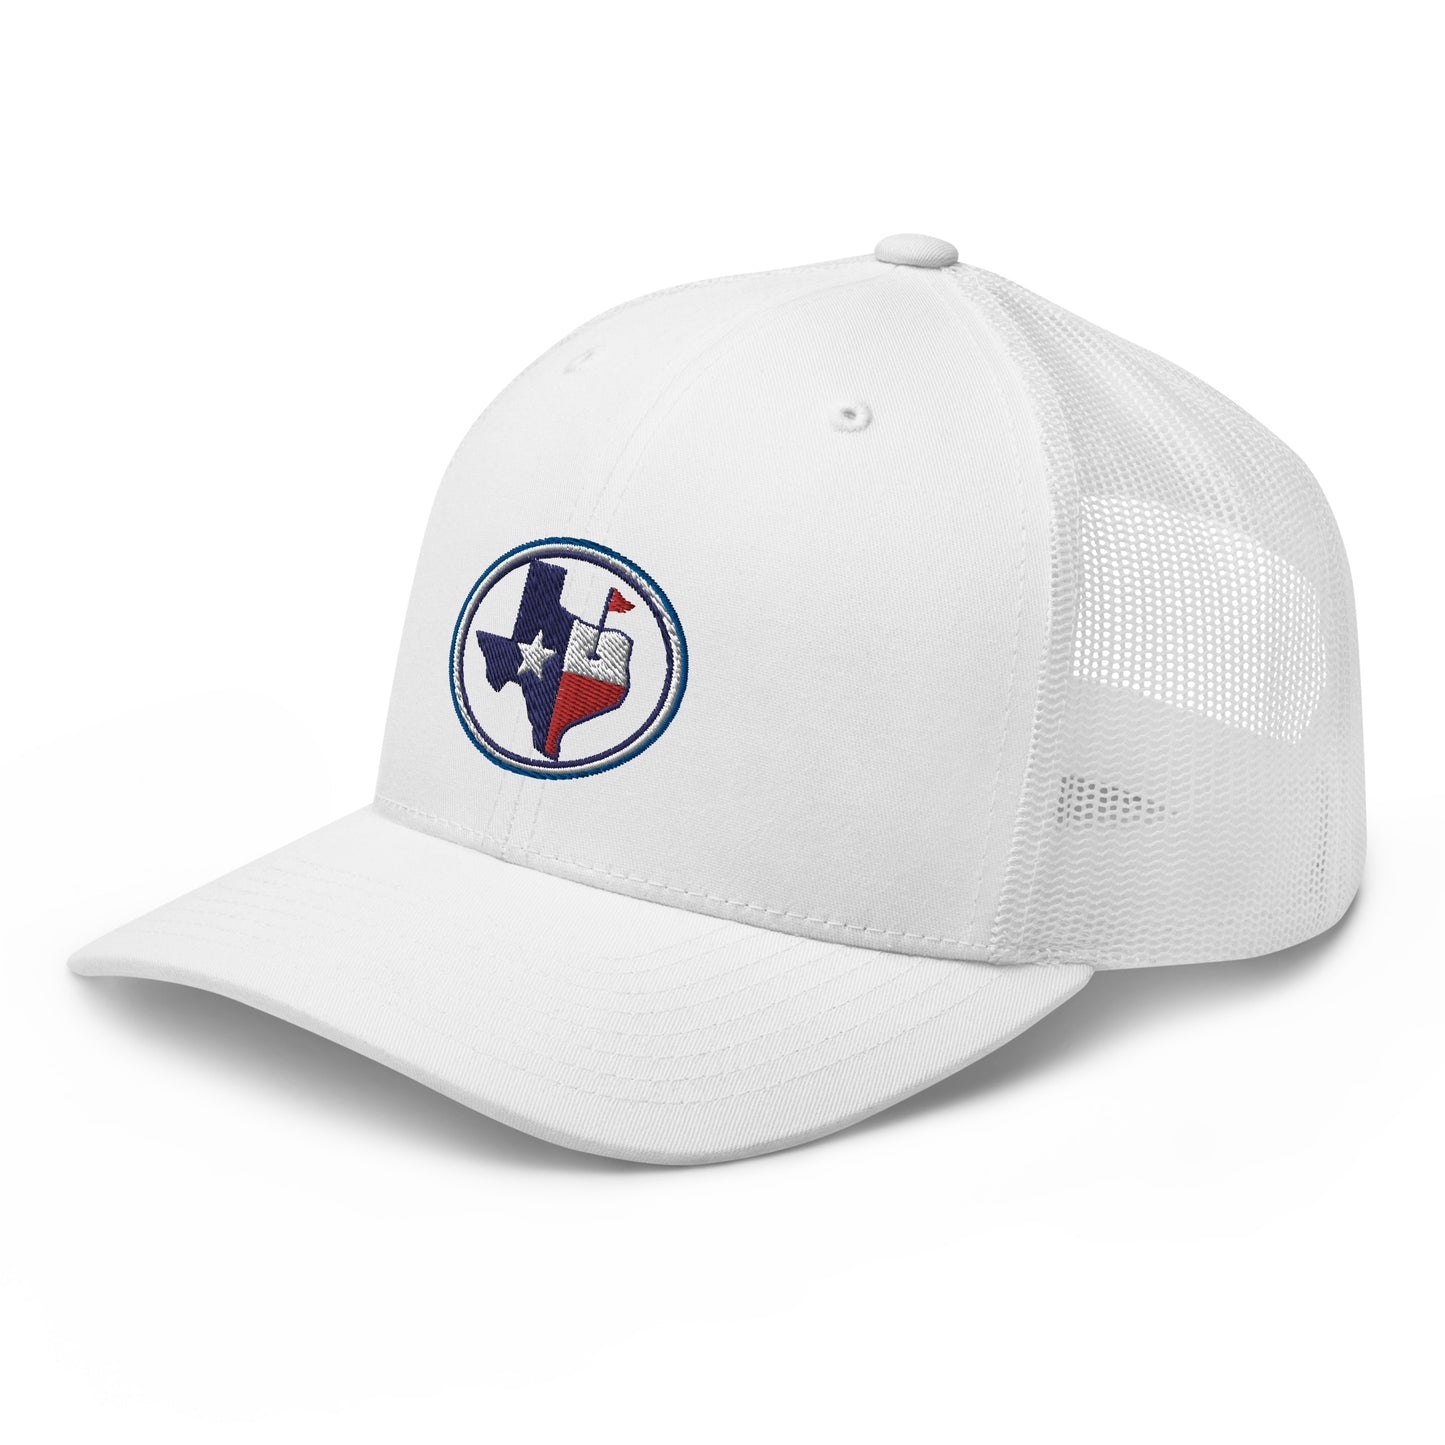 Texas Golf Trucker Cap